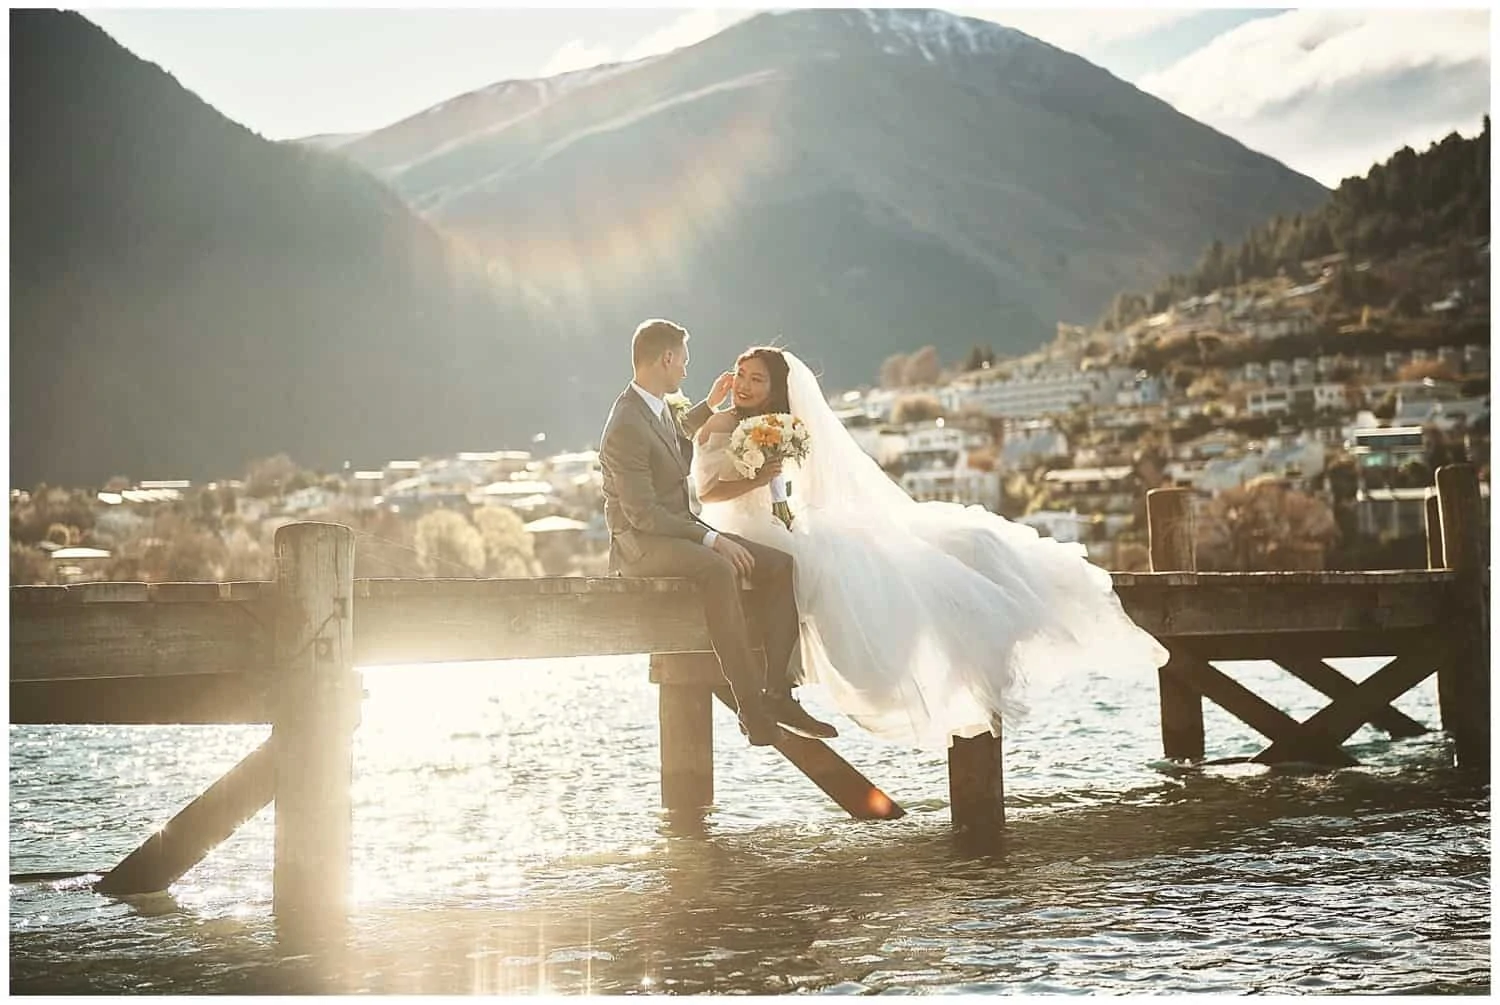 Iris and Marc's lakeside elopement wedding in Queenstown, NZ.